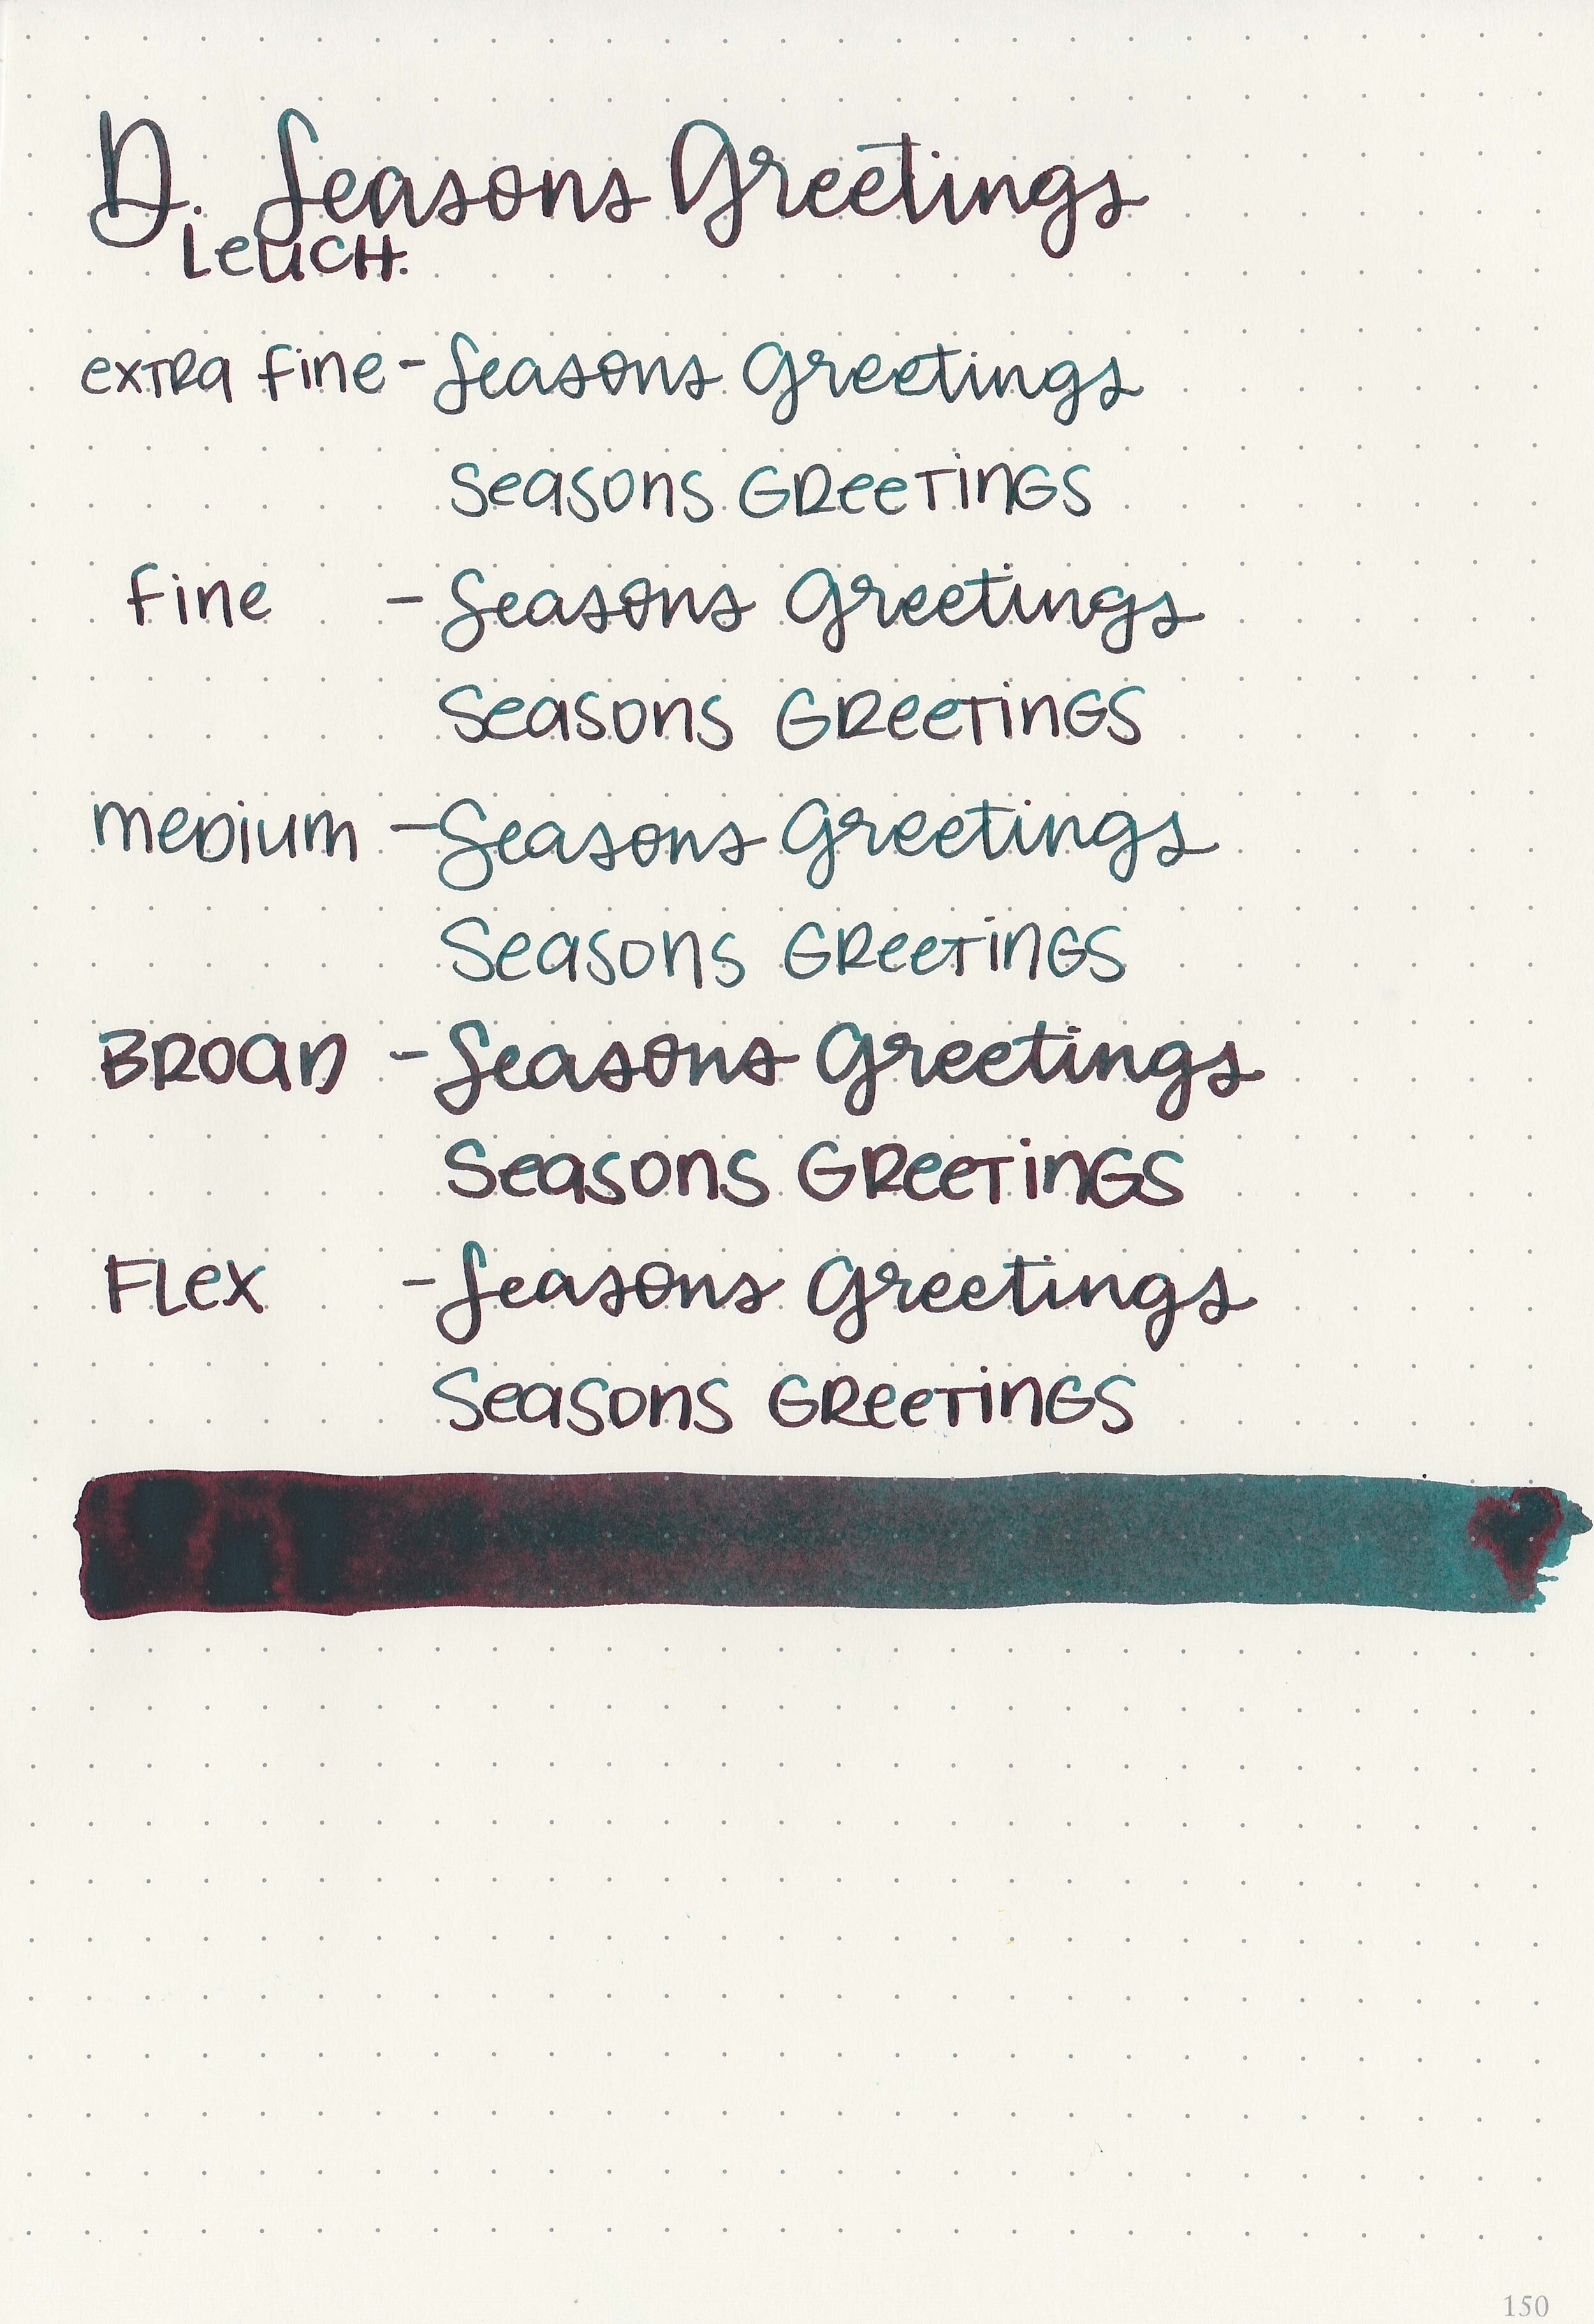 d-seasons-greetings-9.jpg